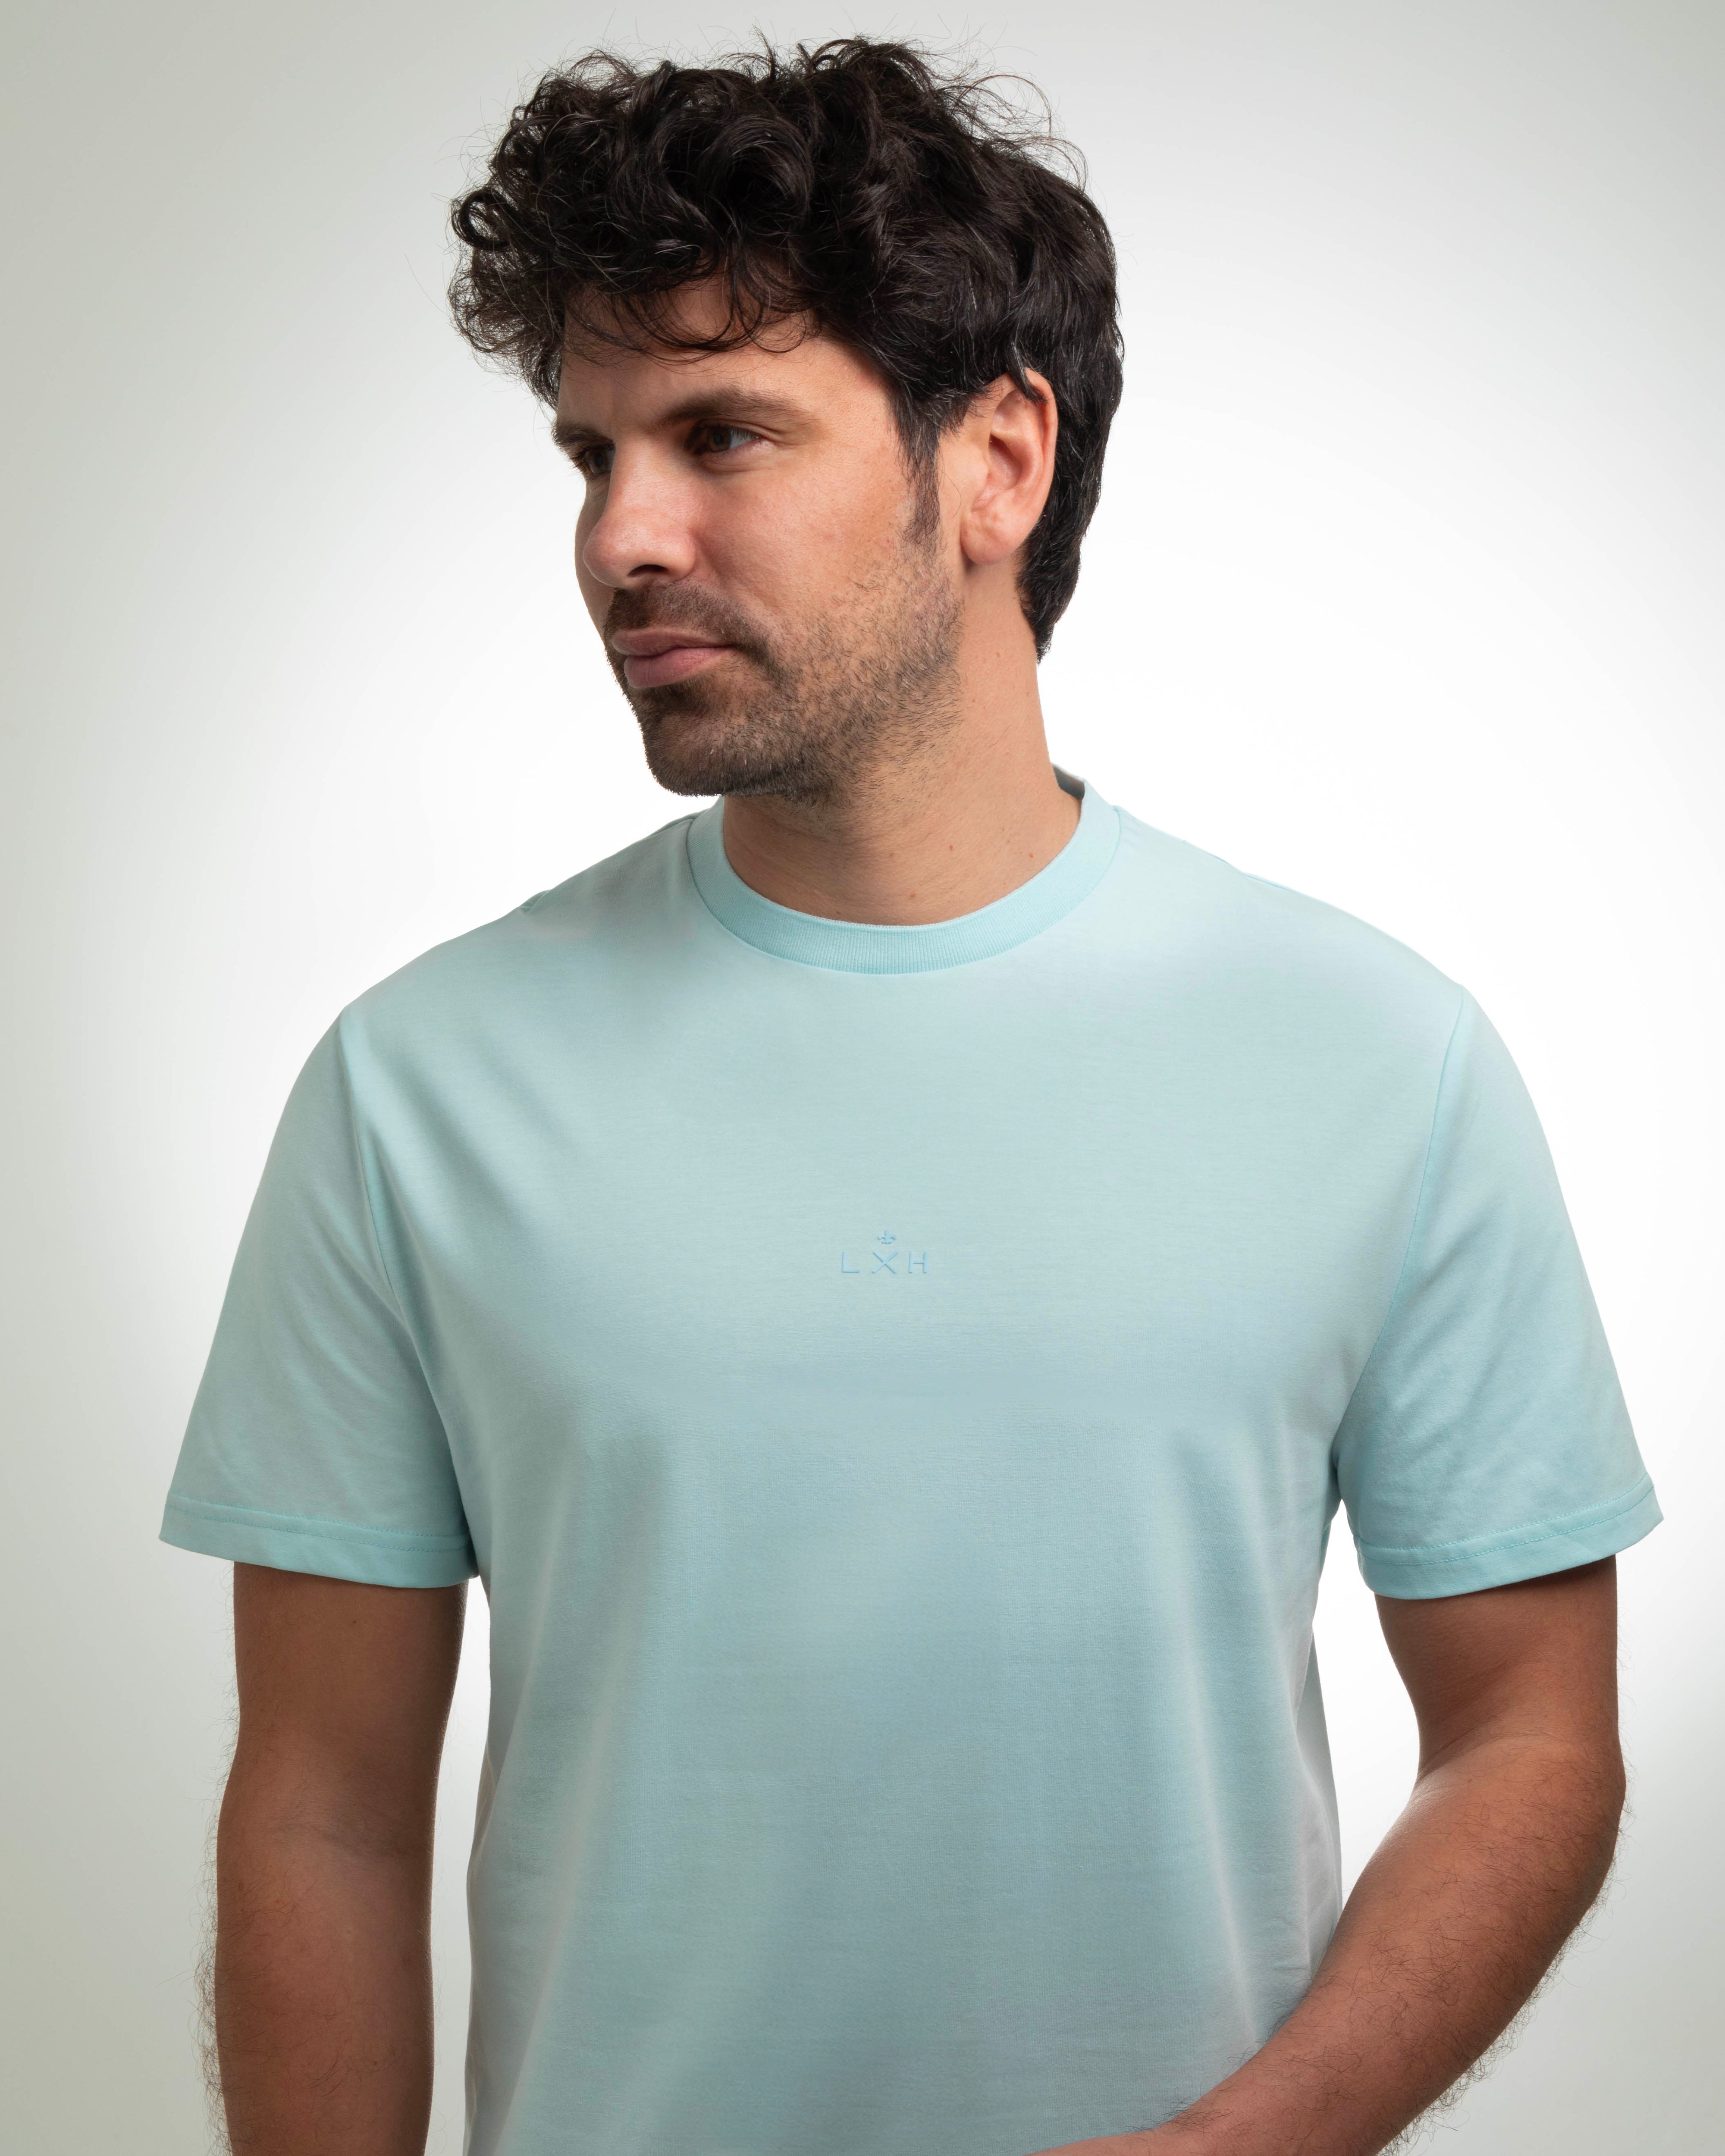 T-shirt Coton Bleu Ciel